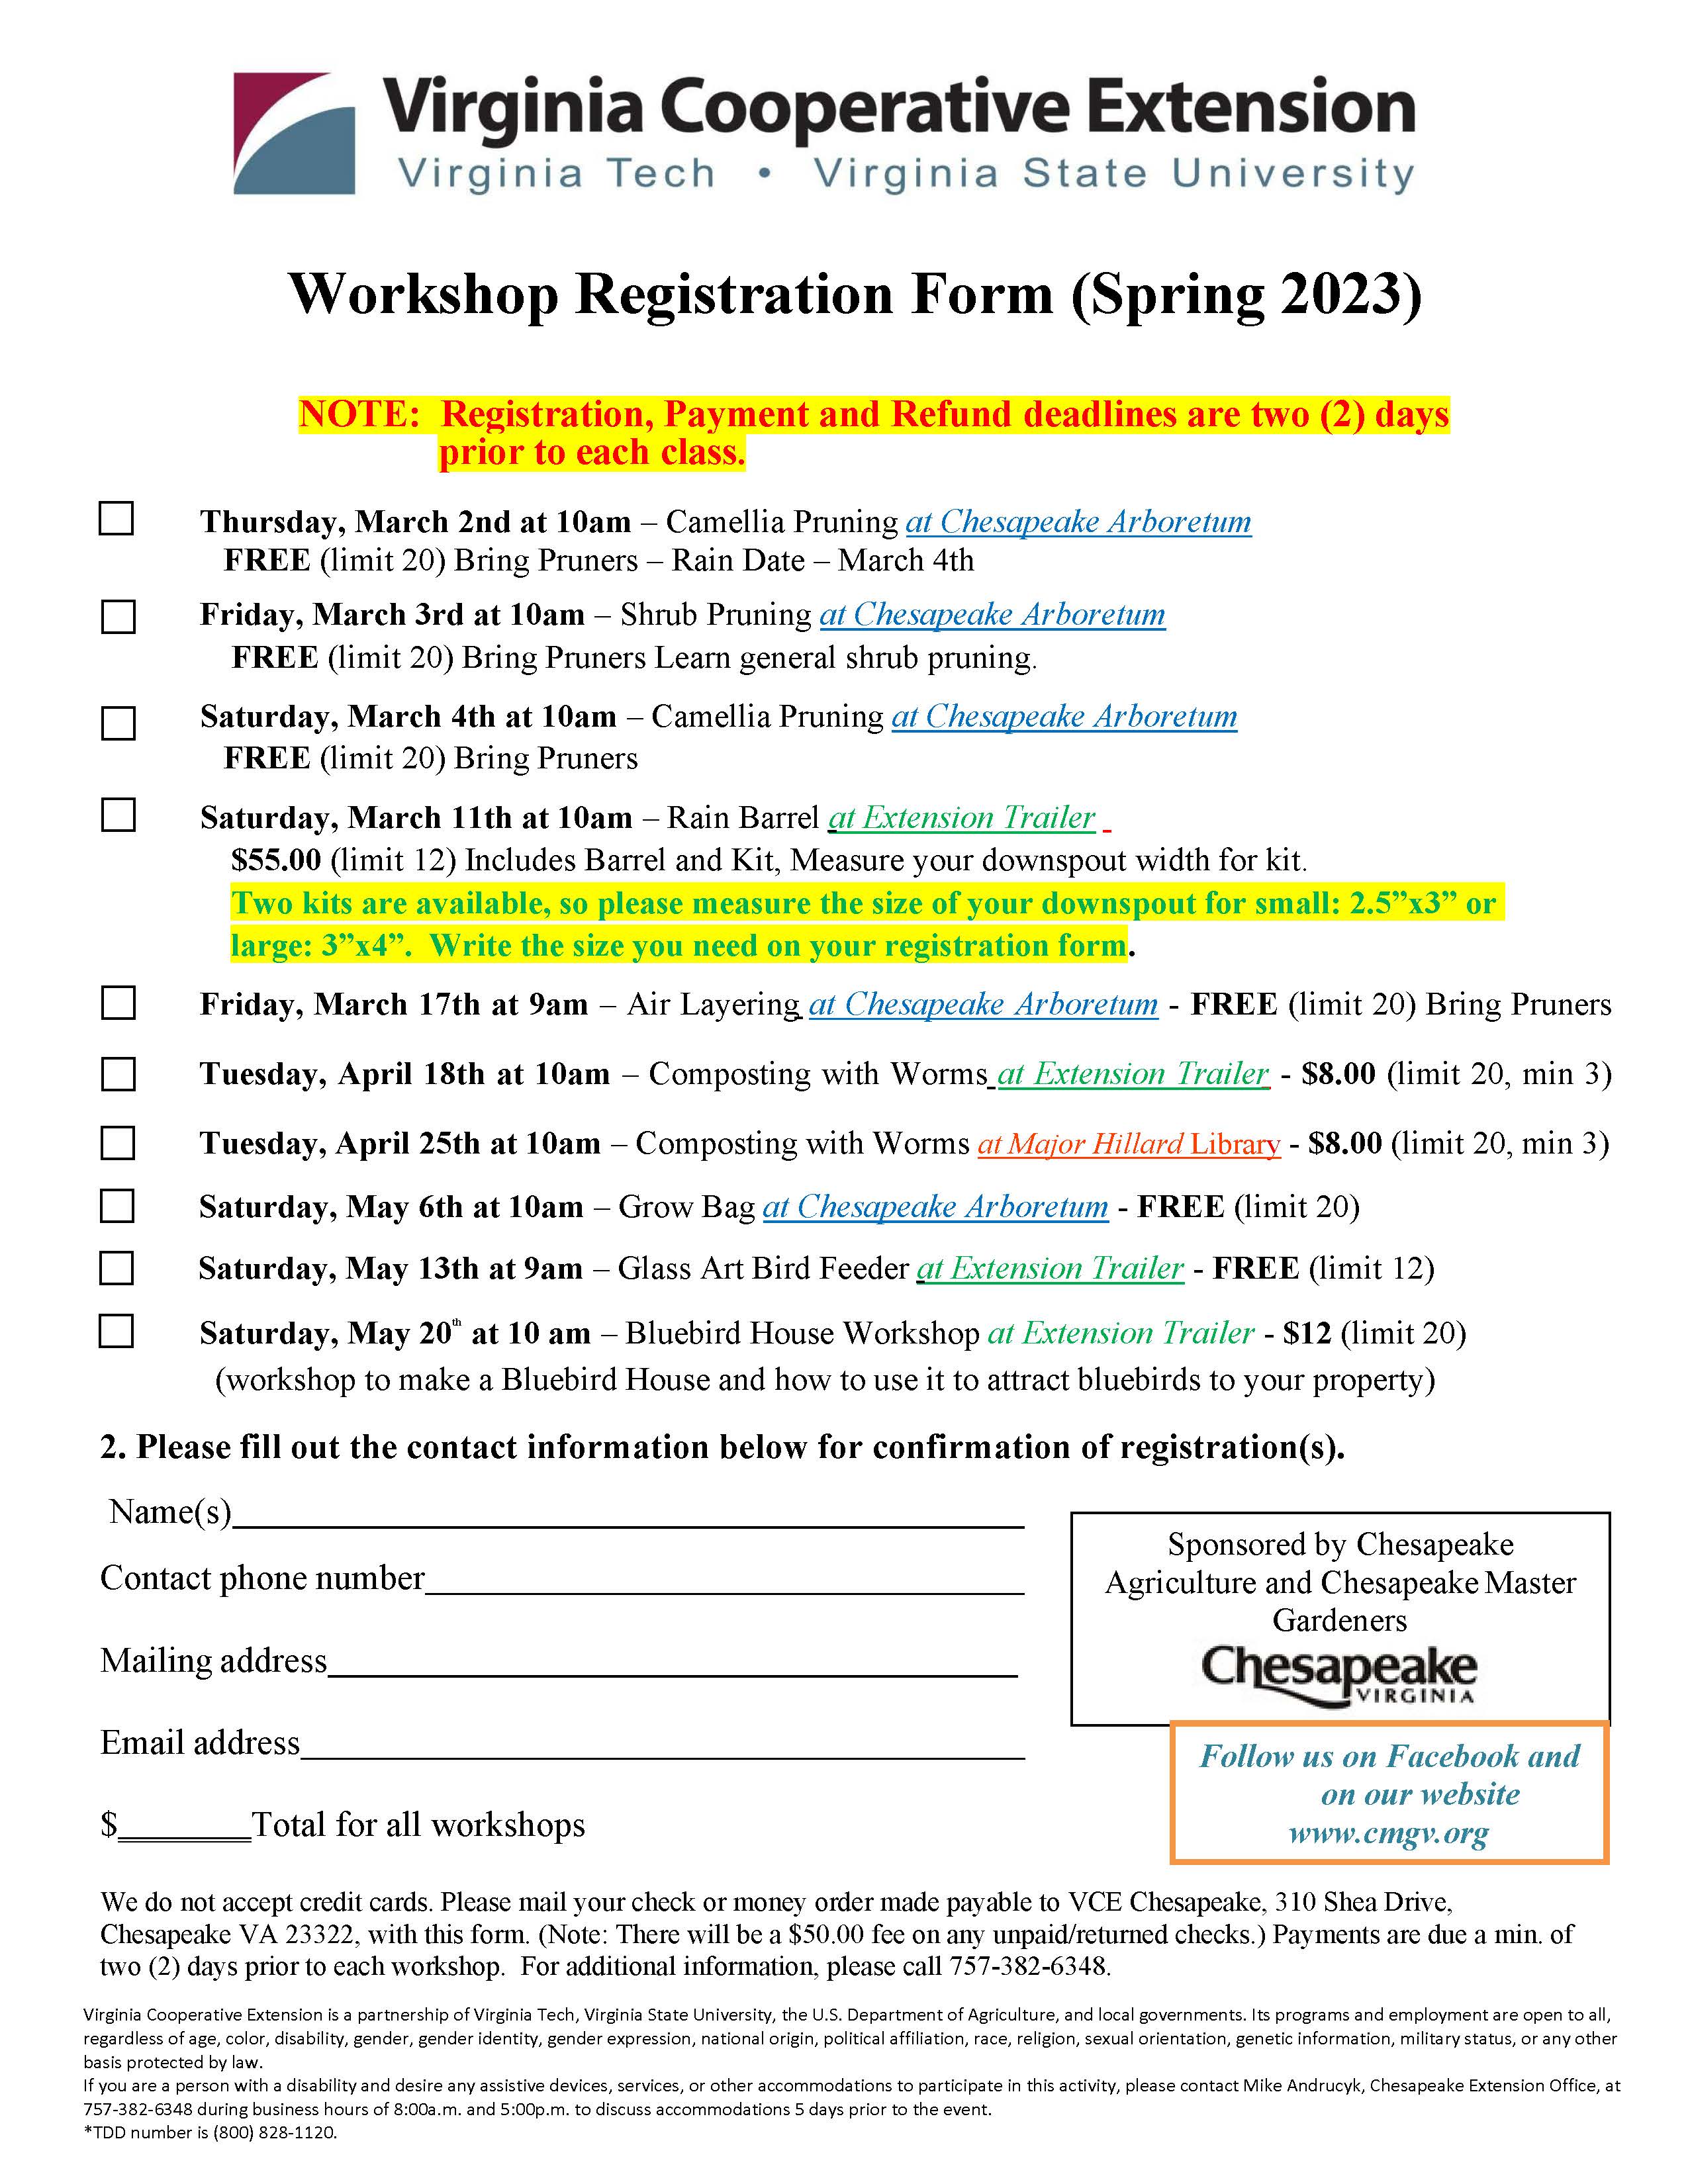 Updated 2023 Workshop Spring Registration Form